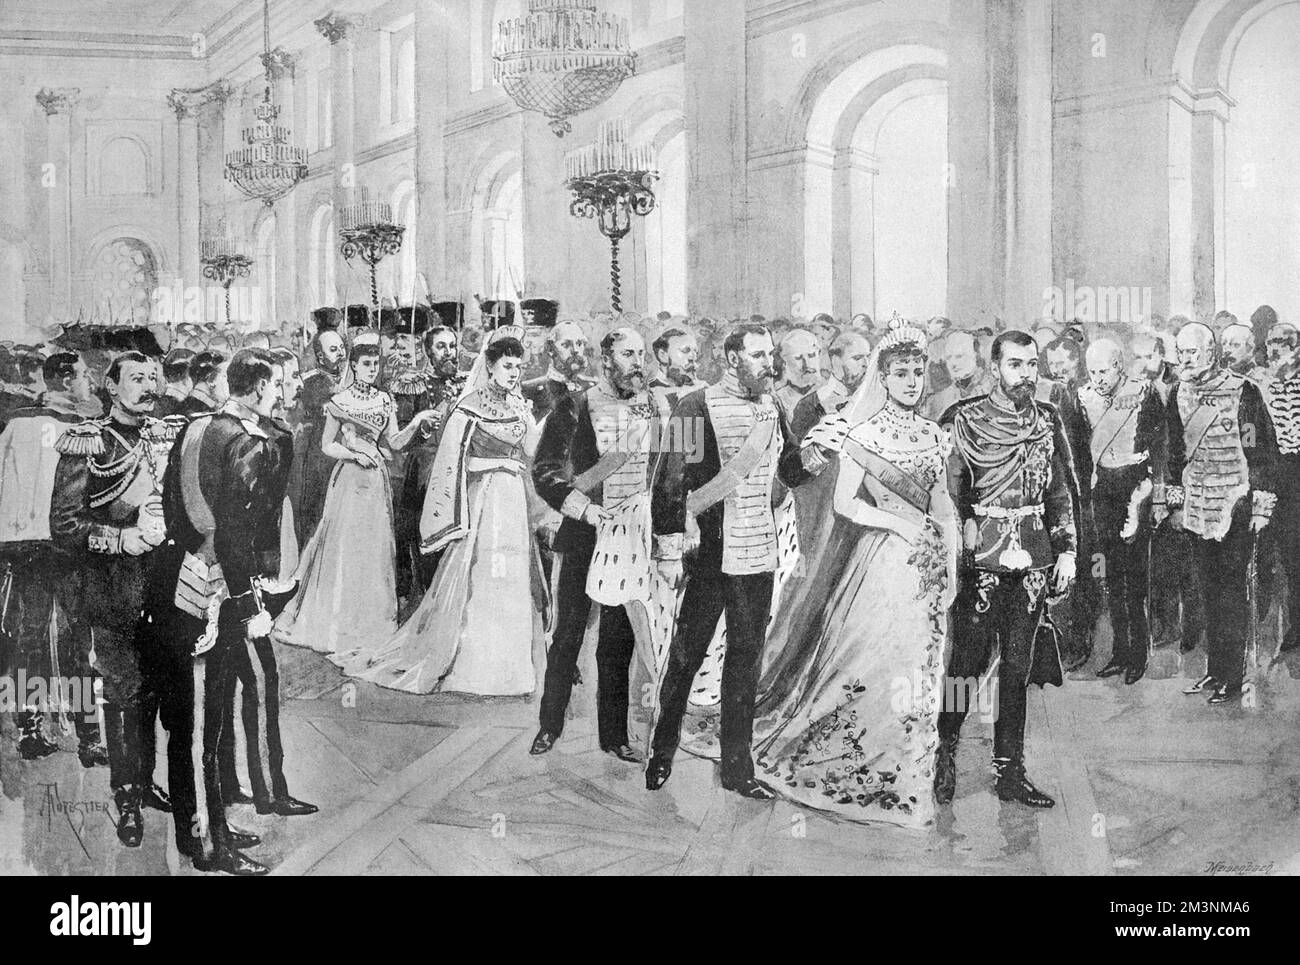 Die Prozession zur Kapelle im Winterpalast während der Hochzeit von Zar Nicholas II. Und Großherzogin Alexandra Feodorowna, Prinzessin Alix von Hessen. Datum: 26.. November 1894 Stockfoto